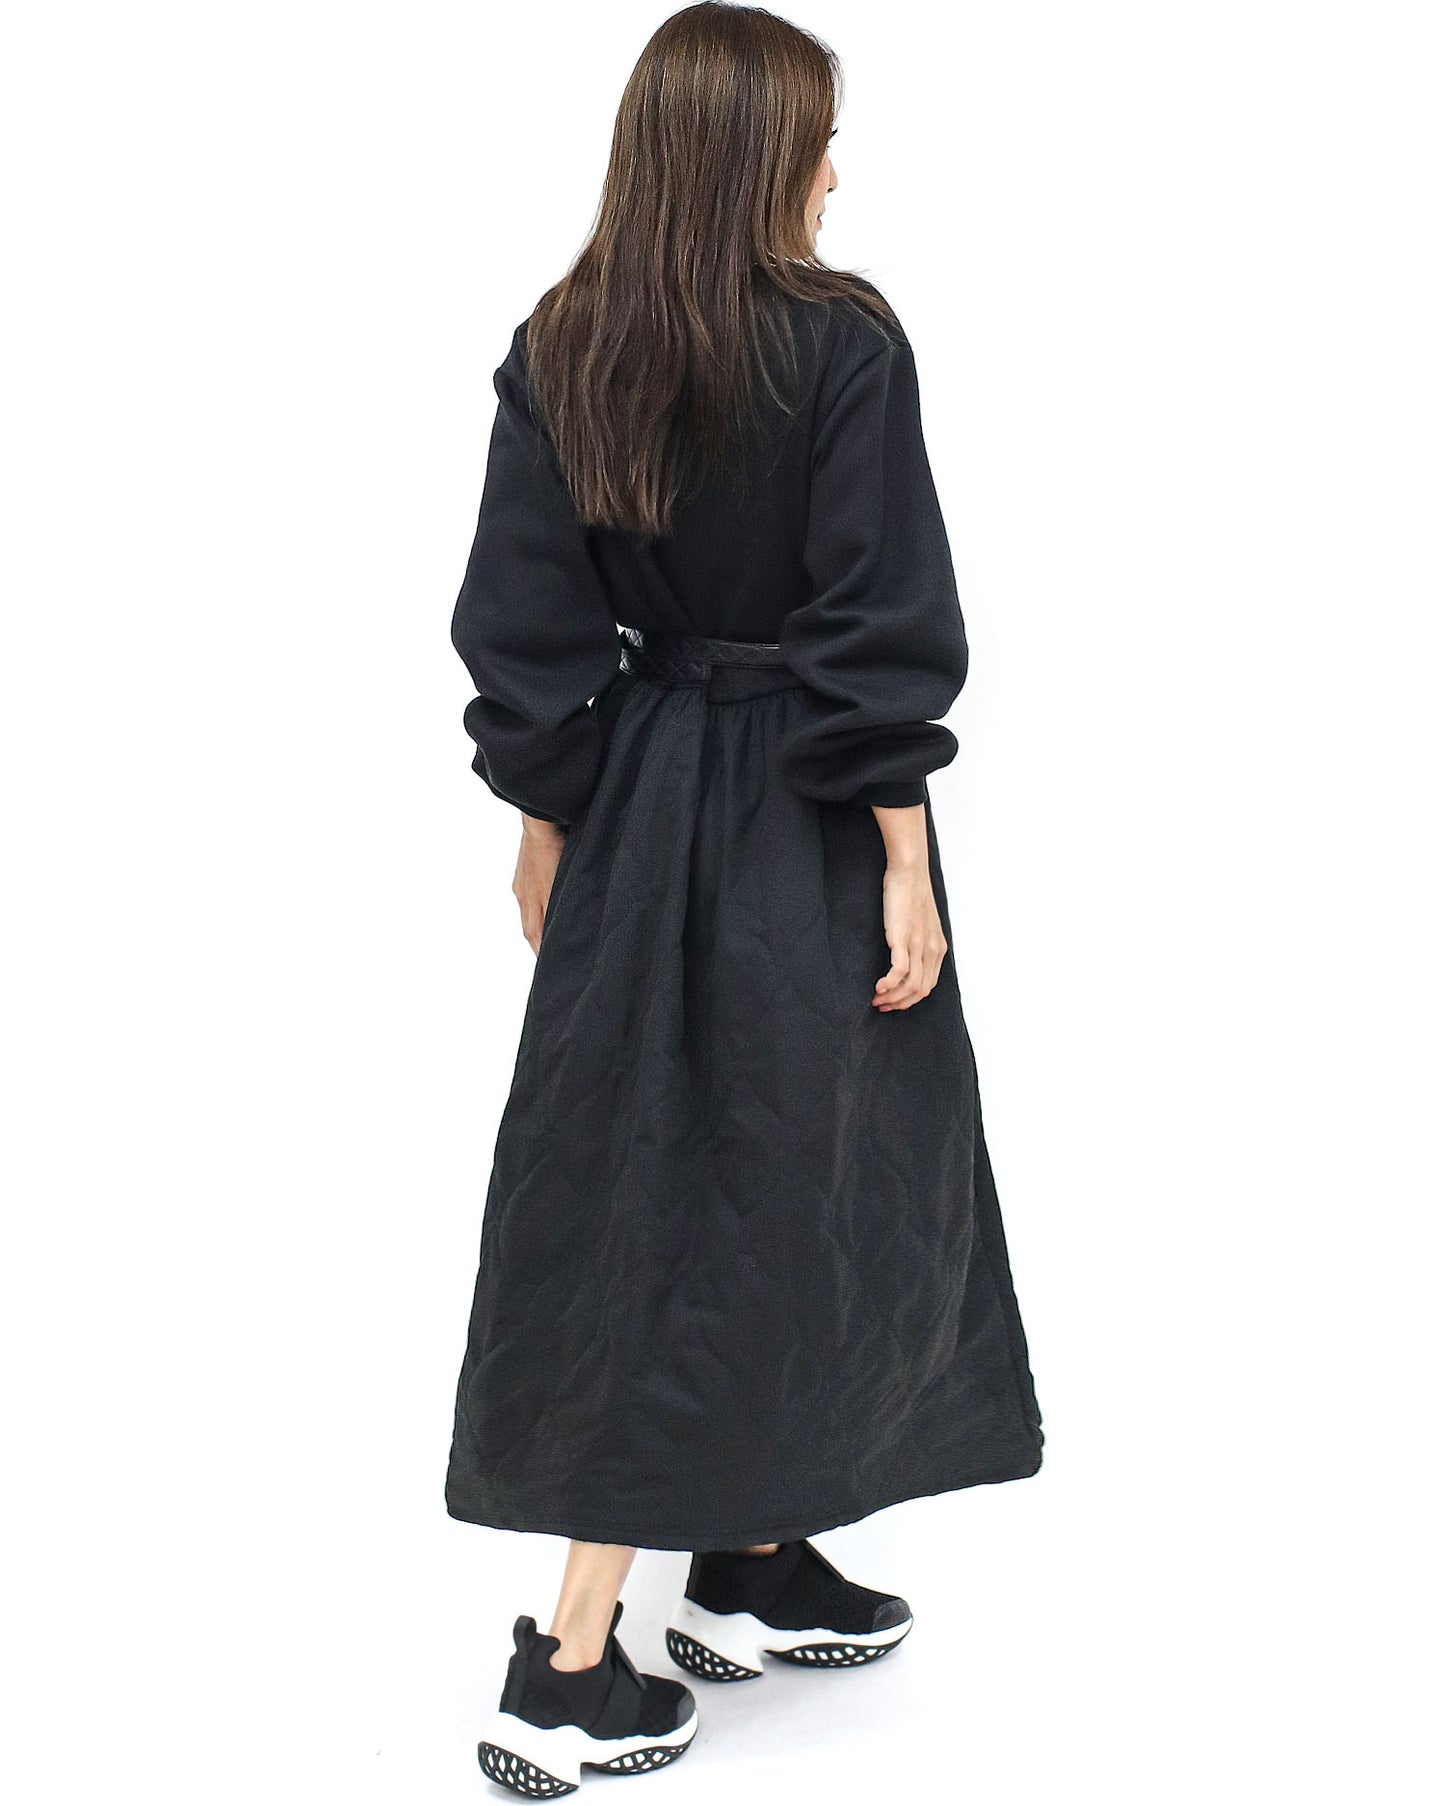 黑色羊毛運動衫搭配絎縫喇叭連身裙